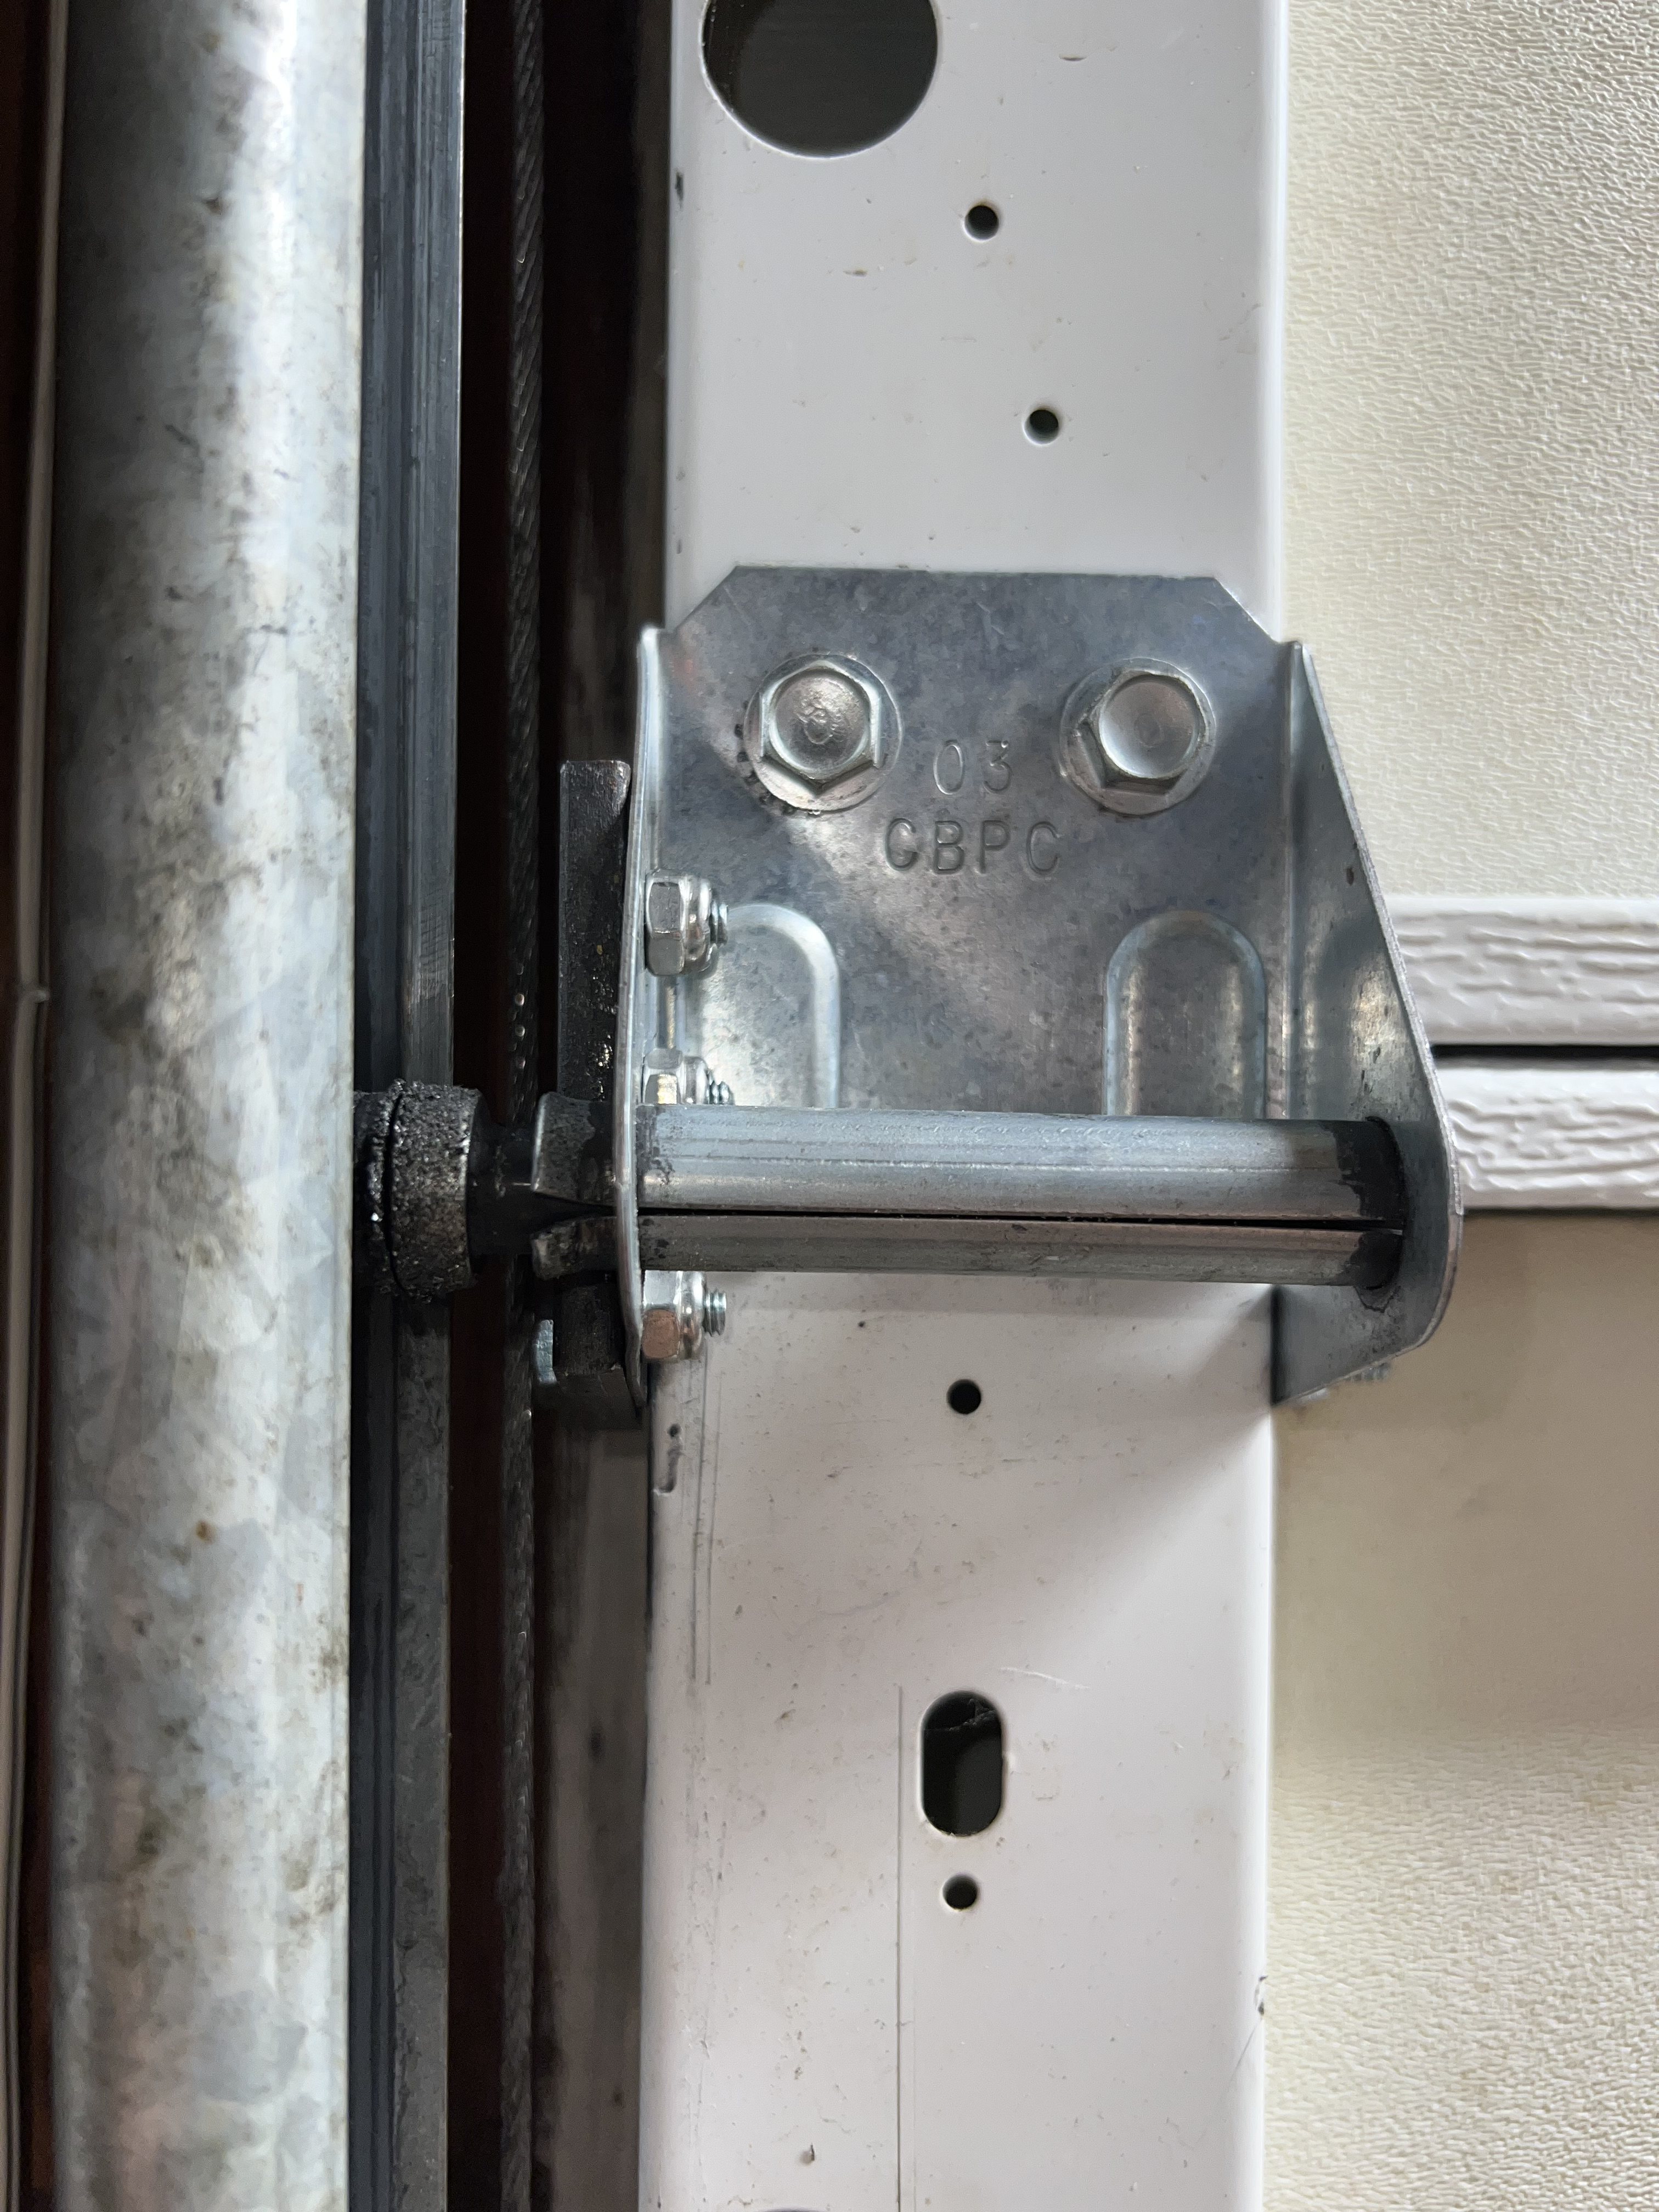 Repaired hinge mounted to door.